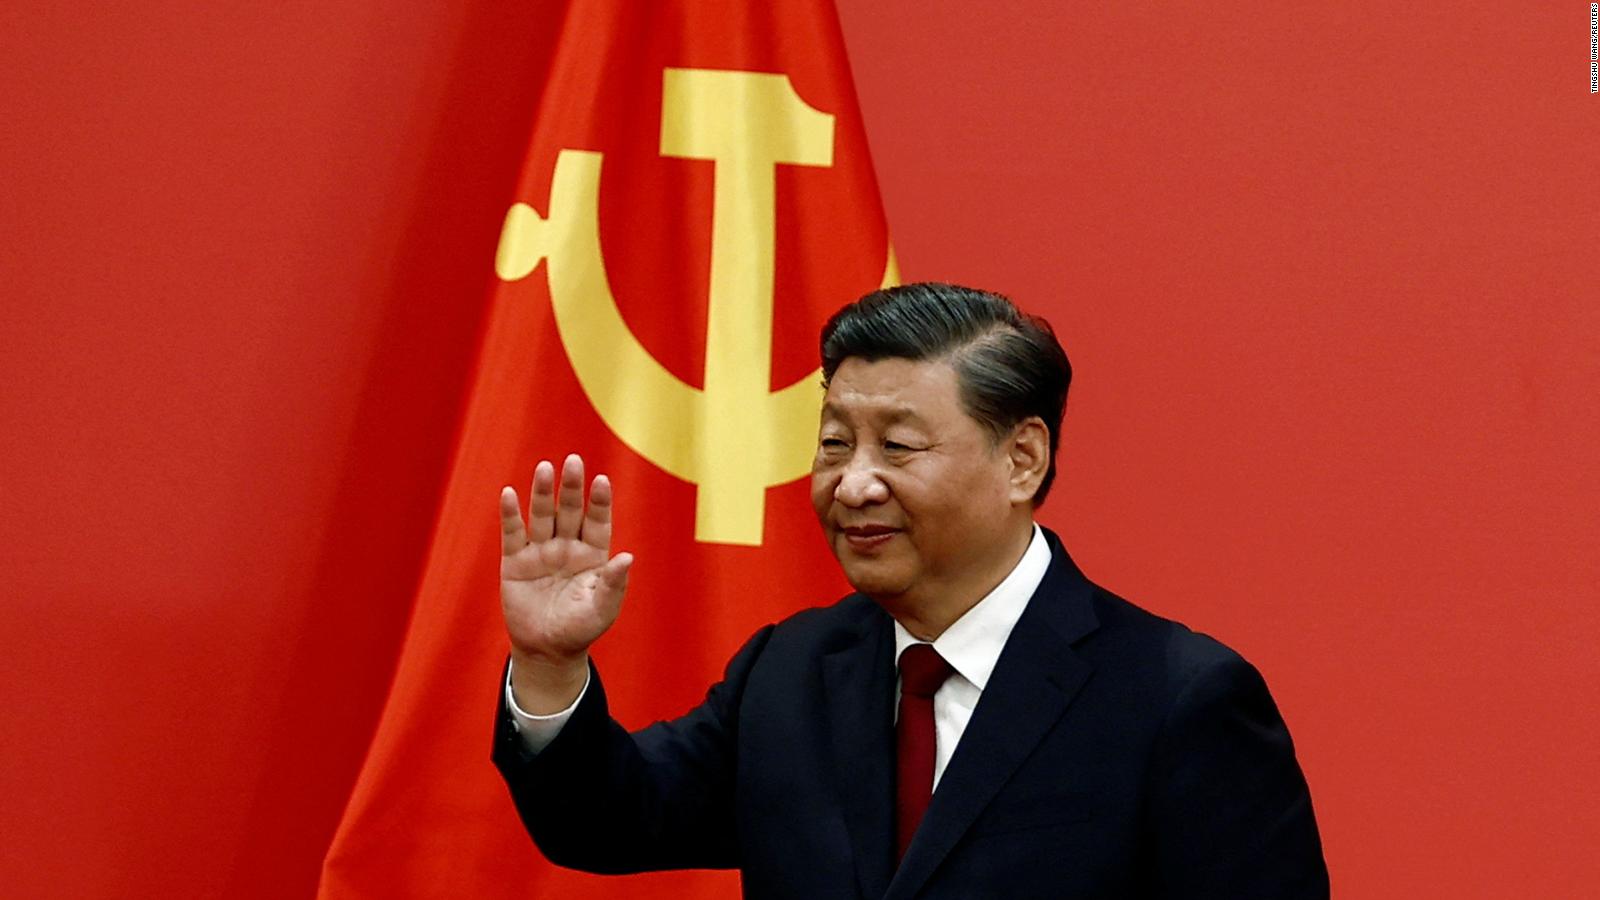 Xi Jinping zapewnił sobie bezprecedensową trzecią kadencję jako prezydent Chin w uroczystym głosowaniu